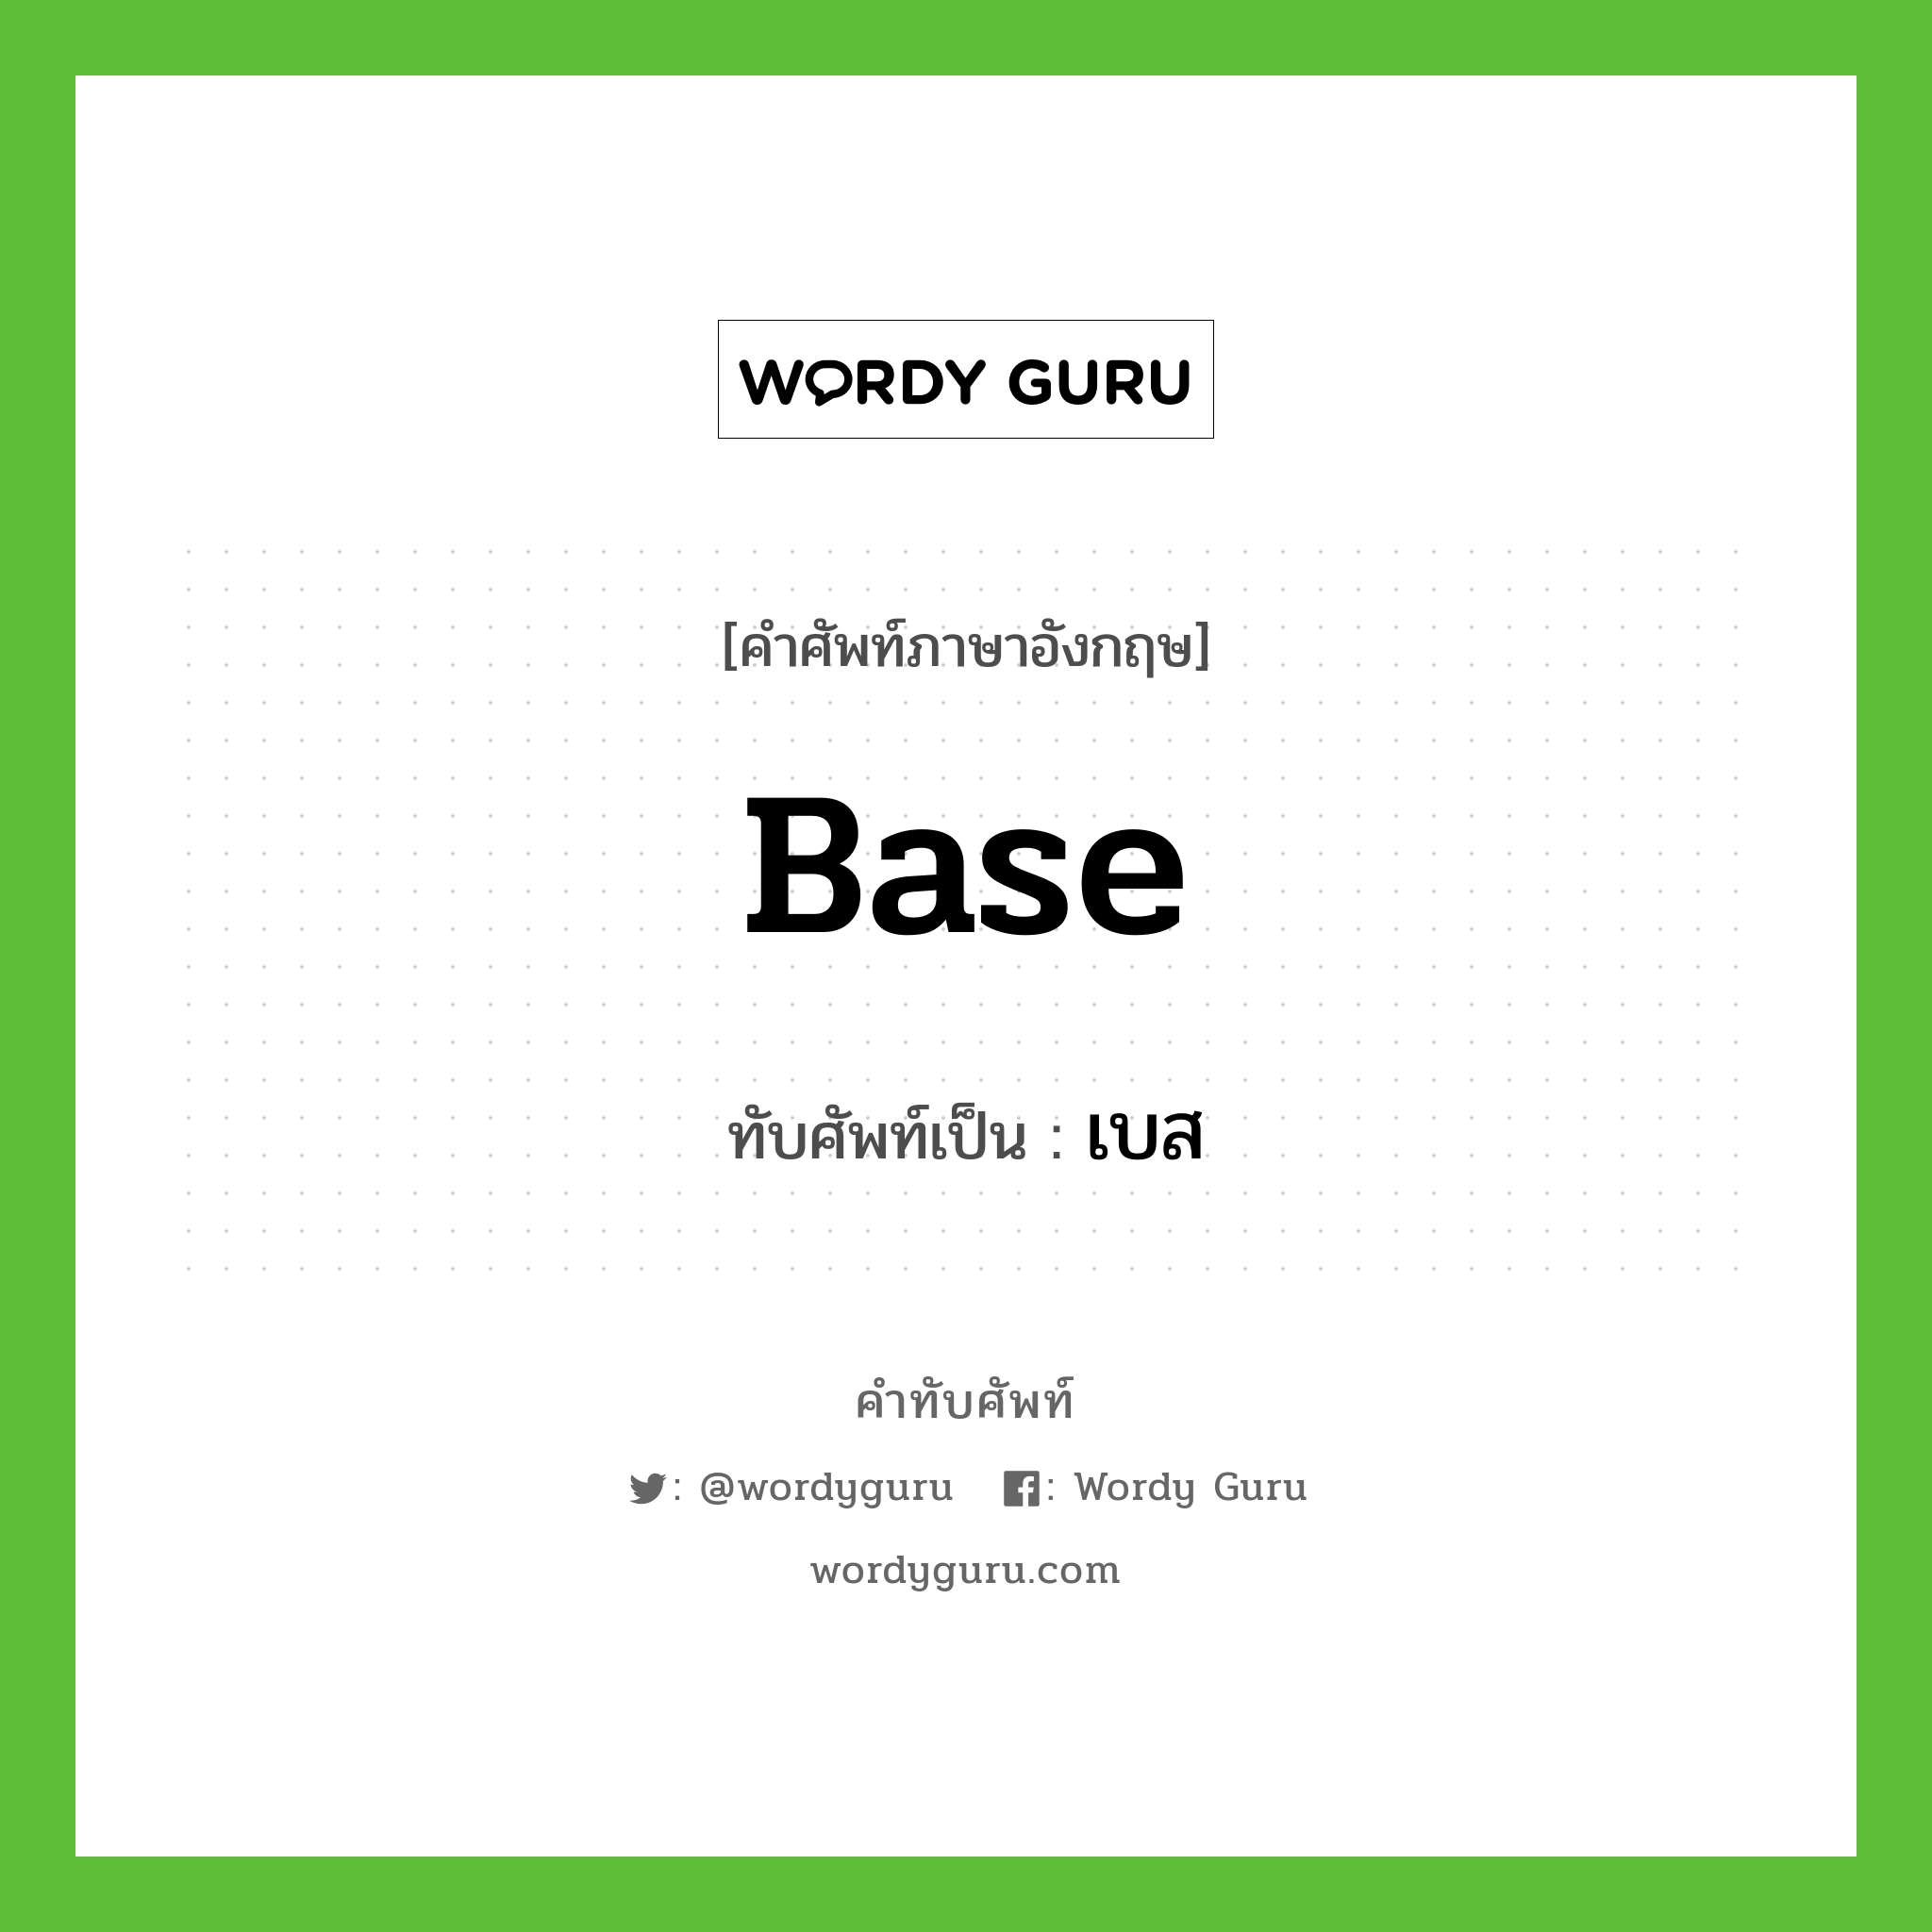 base เขียนเป็นคำไทยว่าอะไร?, คำศัพท์ภาษาอังกฤษ base ทับศัพท์เป็น เบส